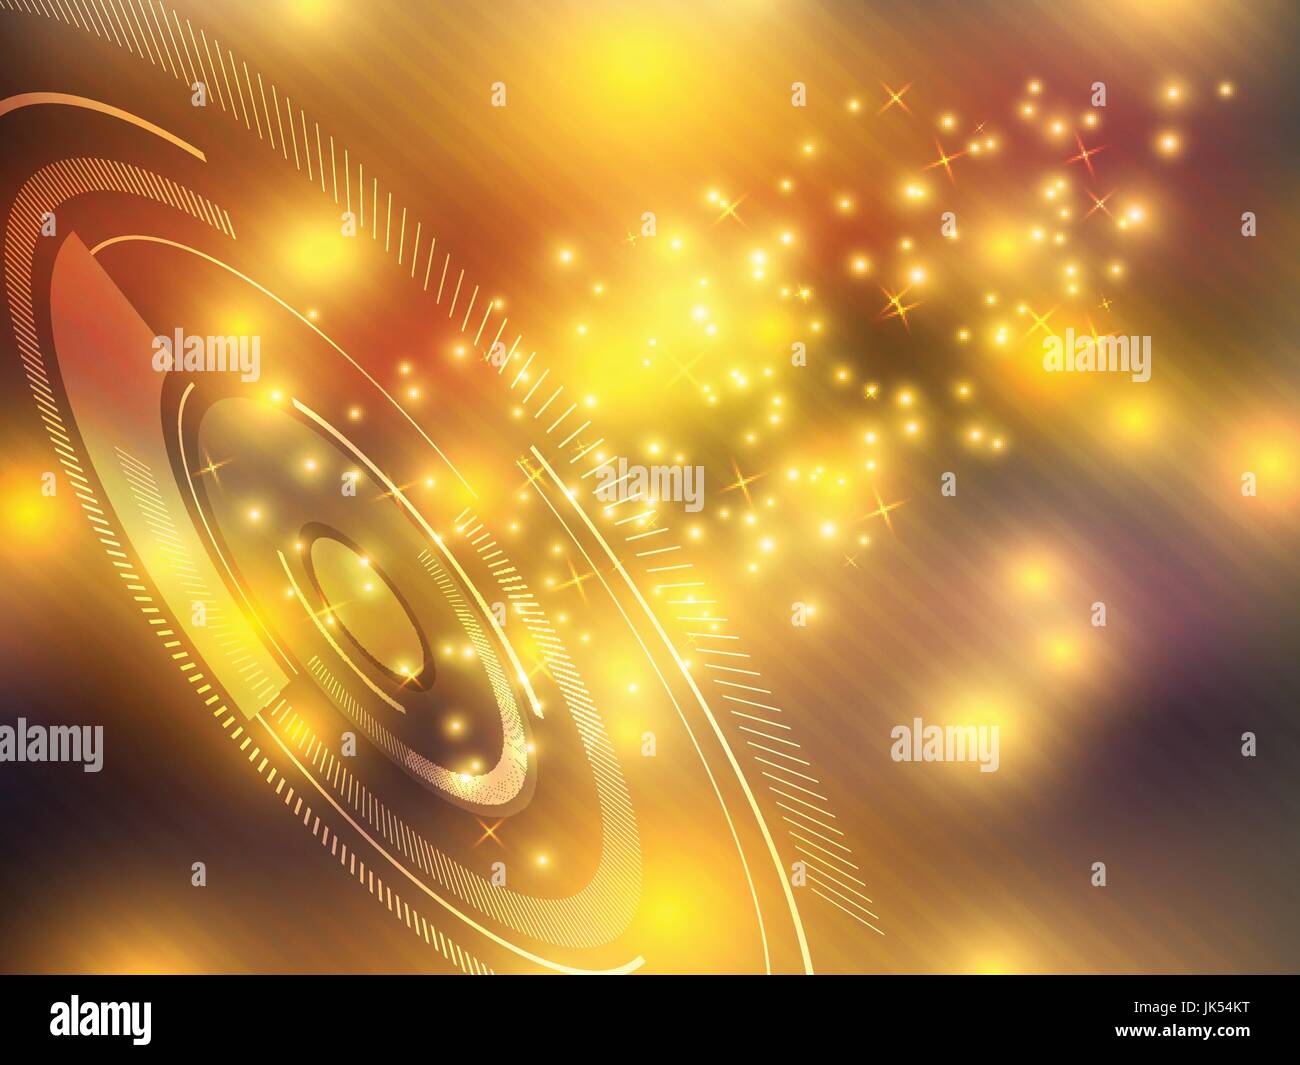 Technik Hintergrund gelb futuristische abstrakt mit hellen Lichtern Vektor-illustration Stock Vektor